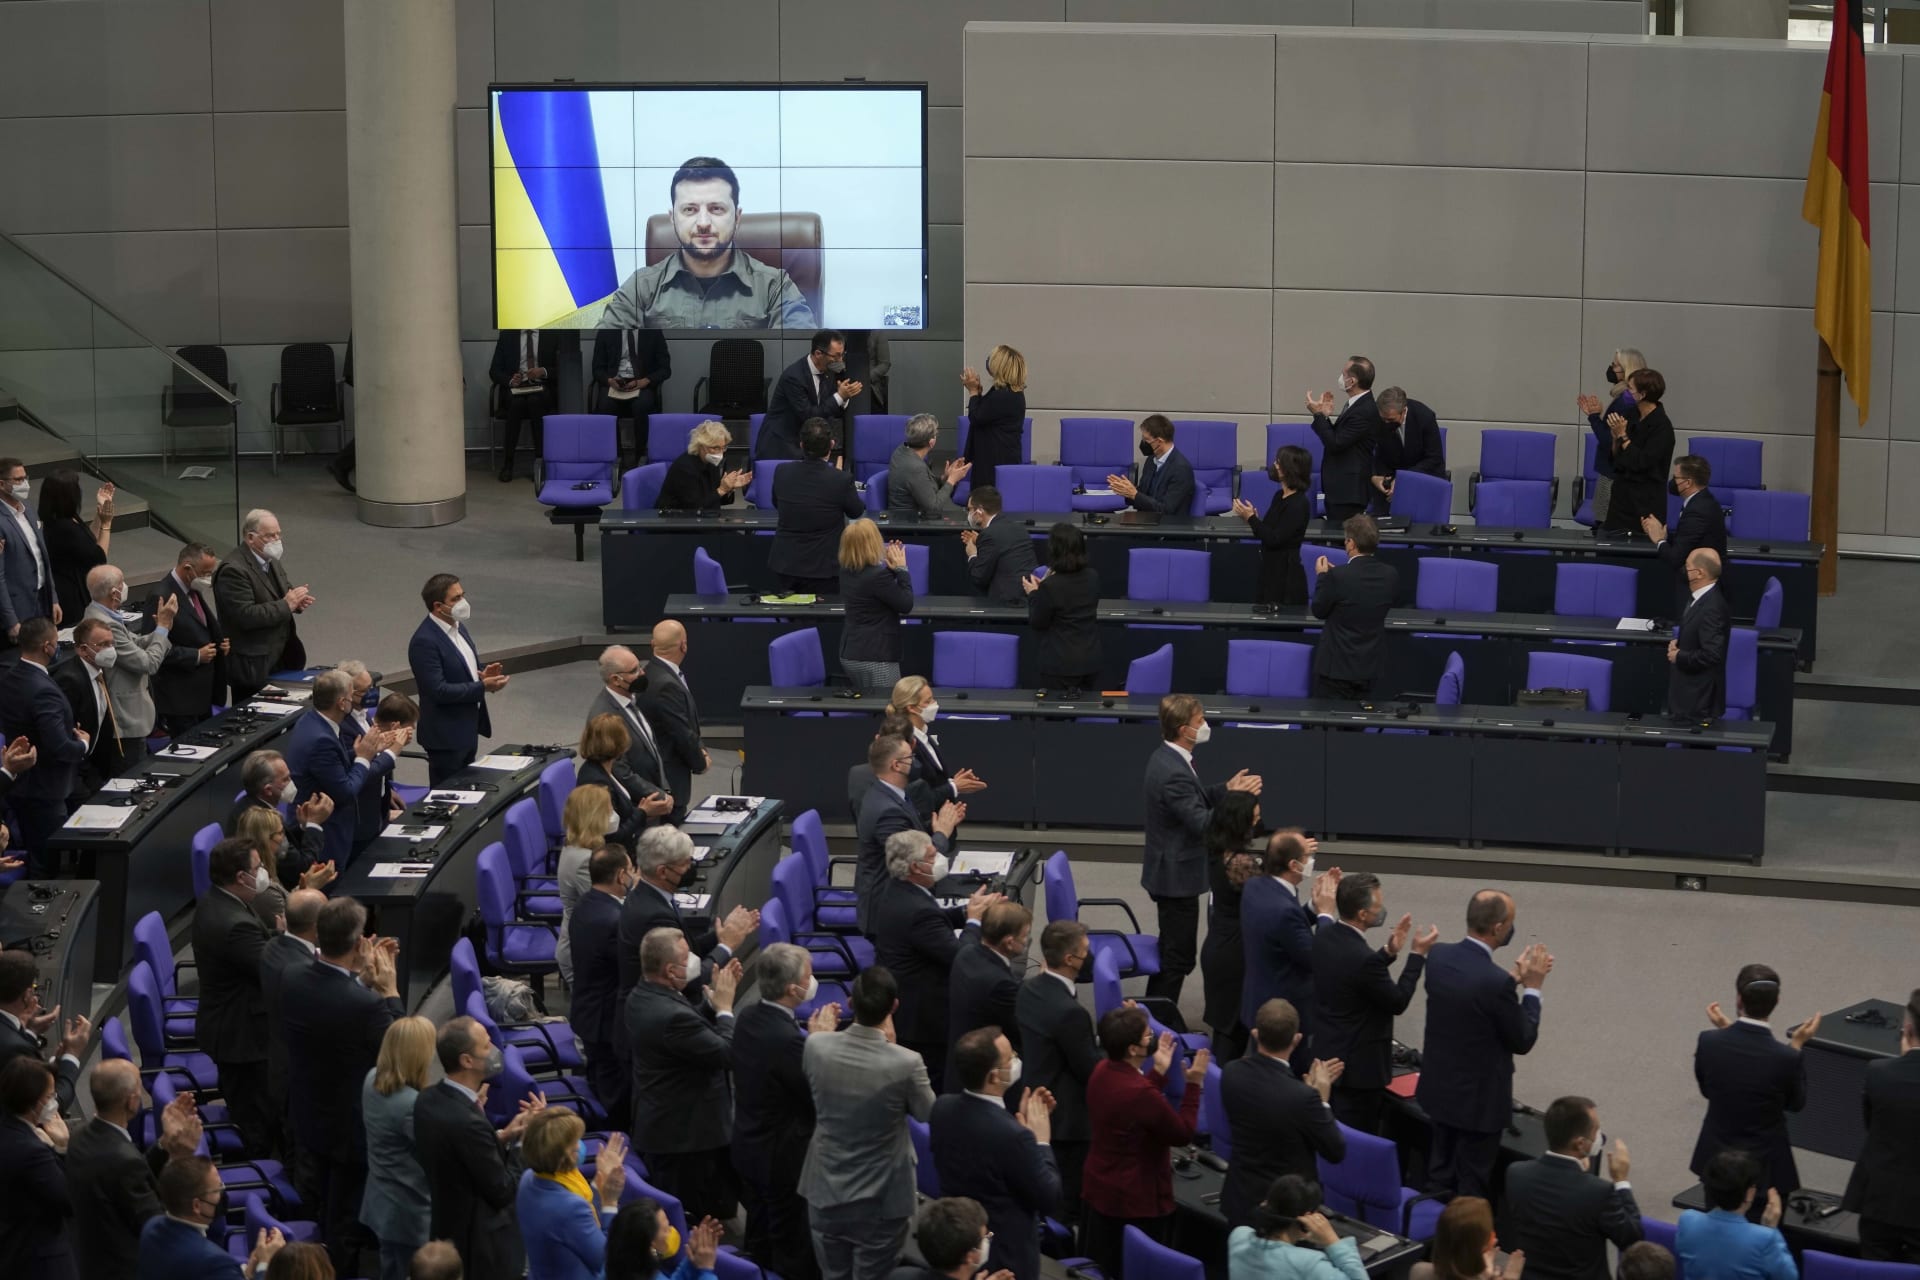 Ukrajinský prezident Zelenskyj promluvil k poslancům Spolkového sněmu.